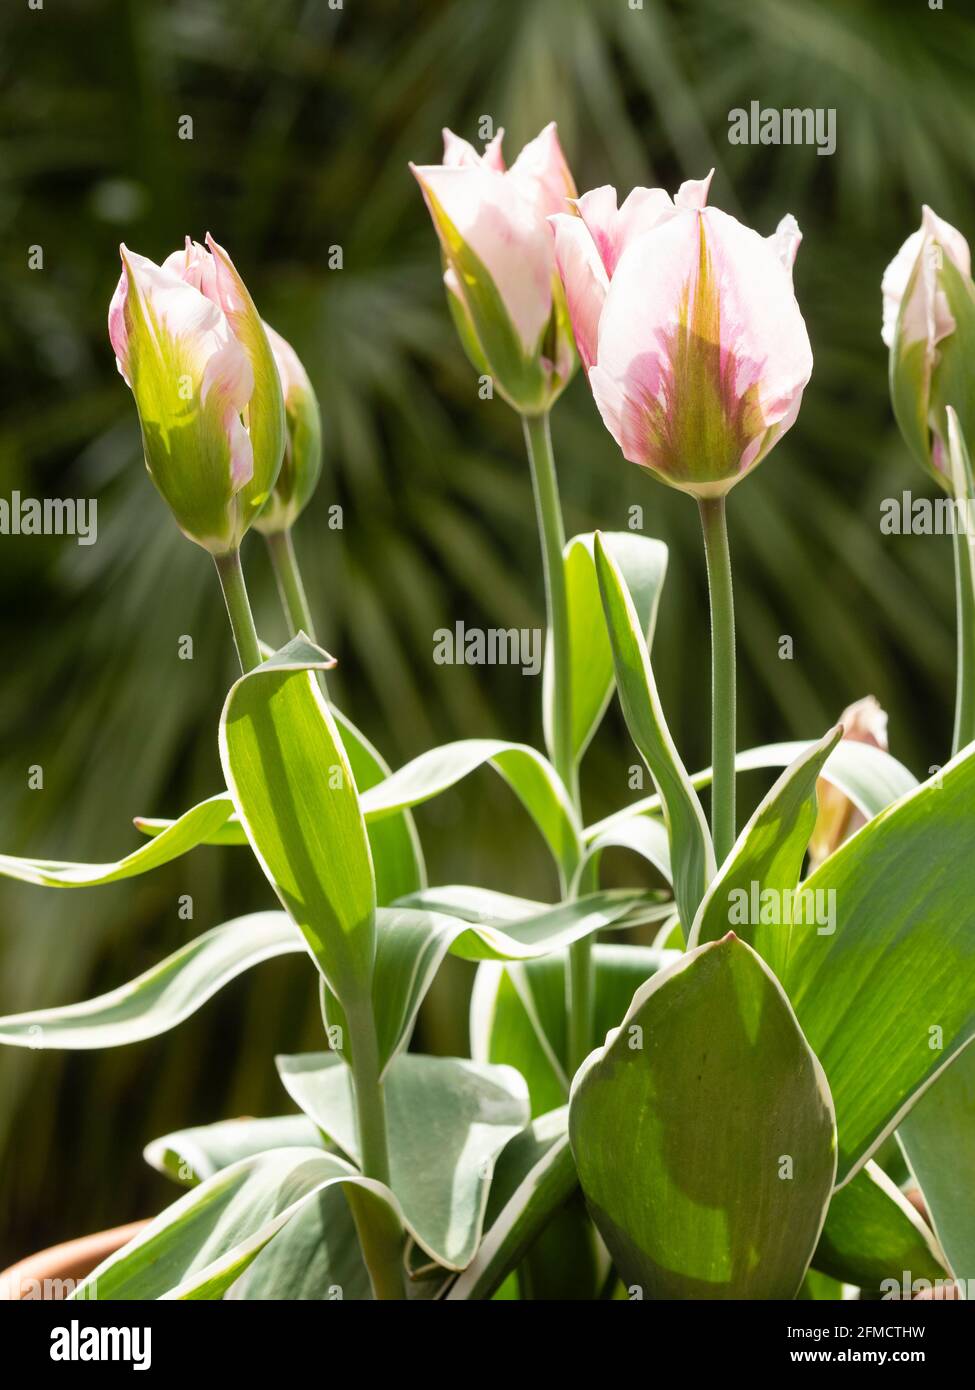 Les fleurs roses, vertes et blanches de la viridiflora florissante de printemps tulipe 'China Town' se tiennent au-dessus du feuillage à bordure blanche Banque D'Images